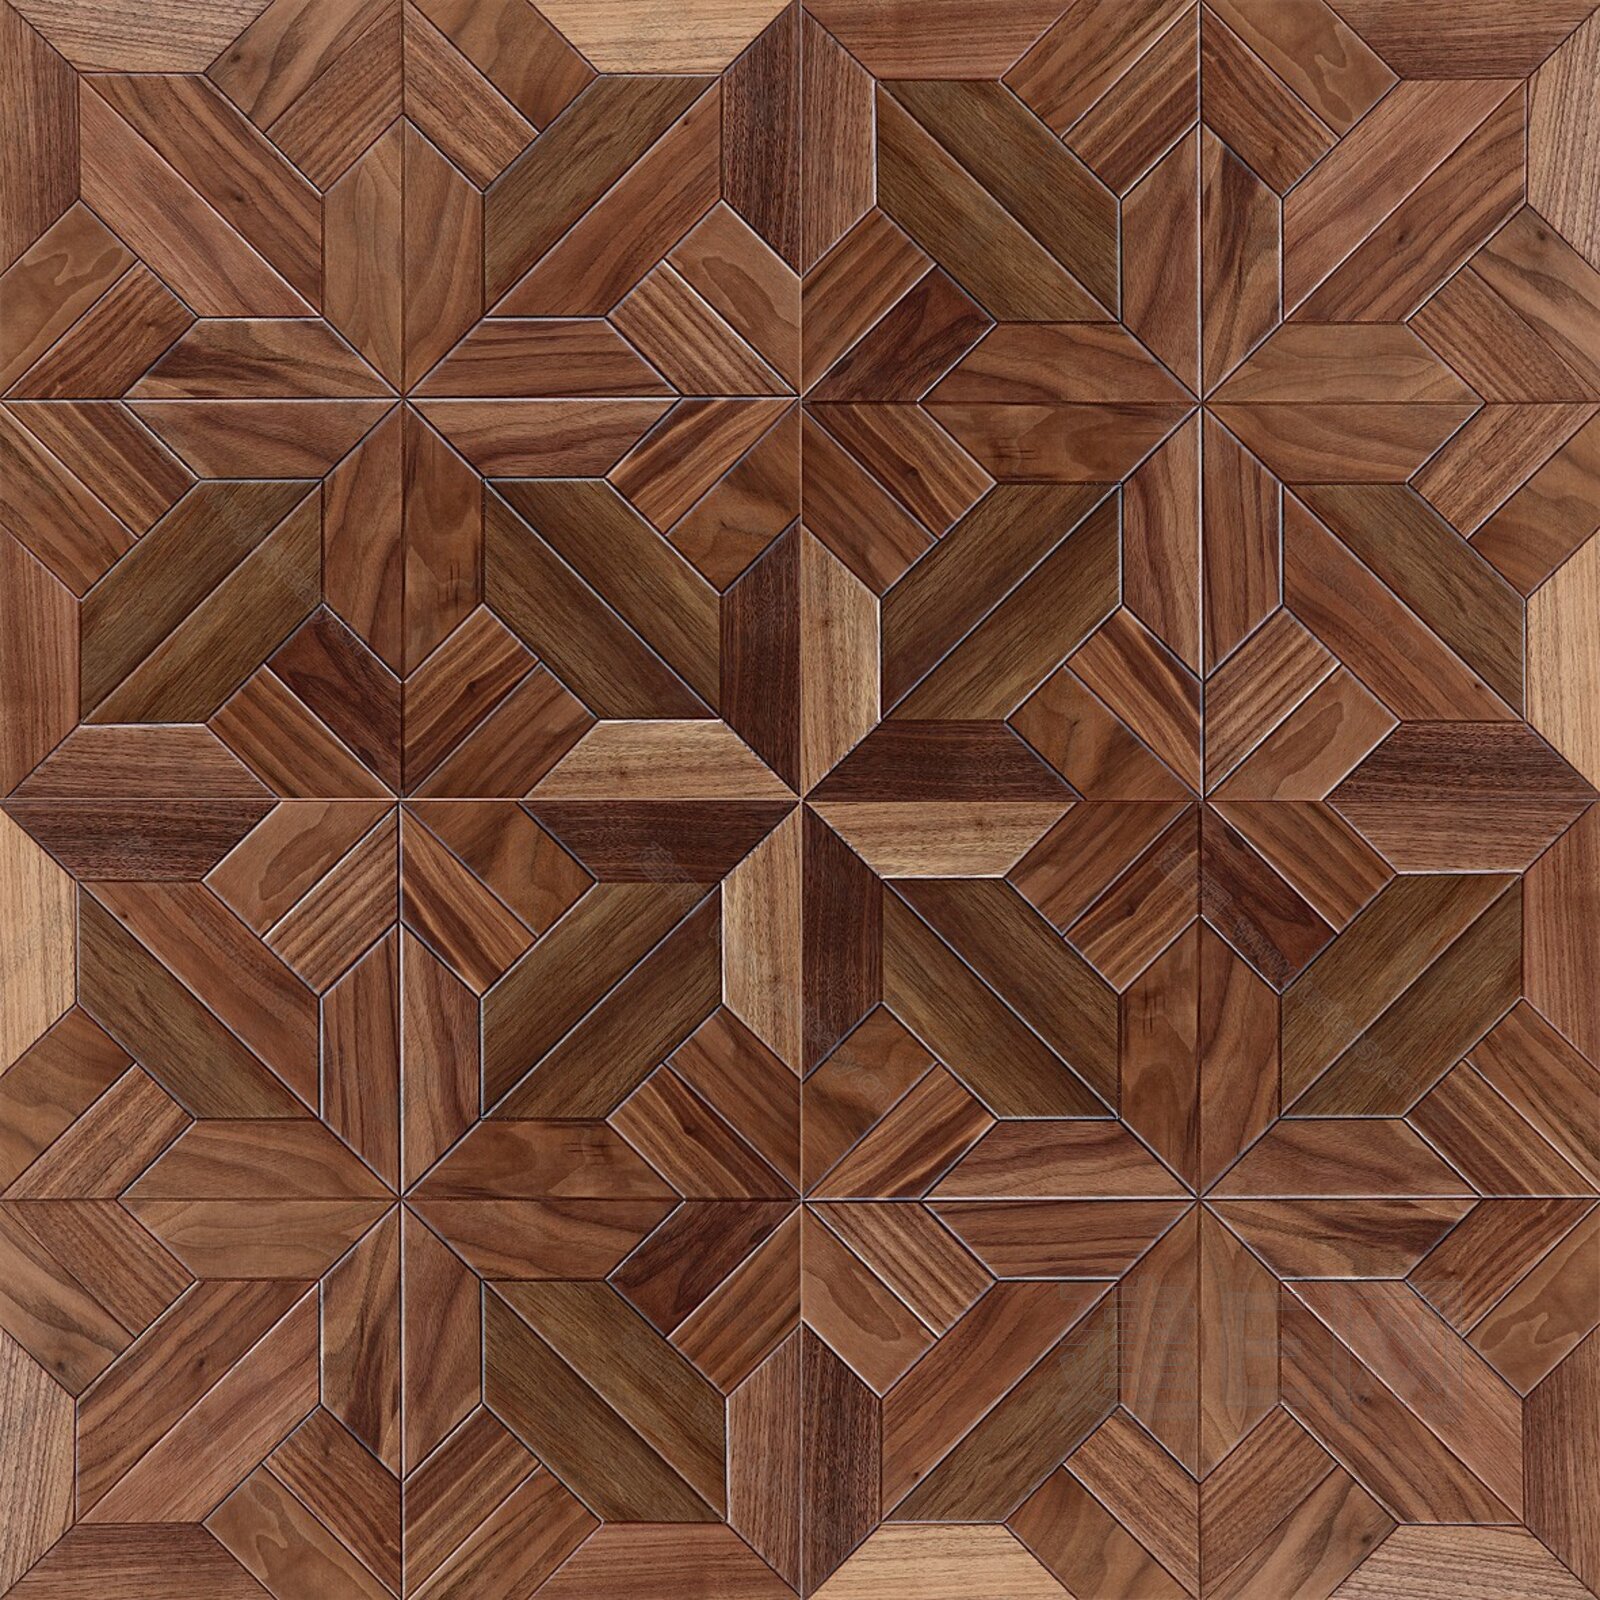 地中海风格拼花木地板装修效果图案例 木地板图片-地板网